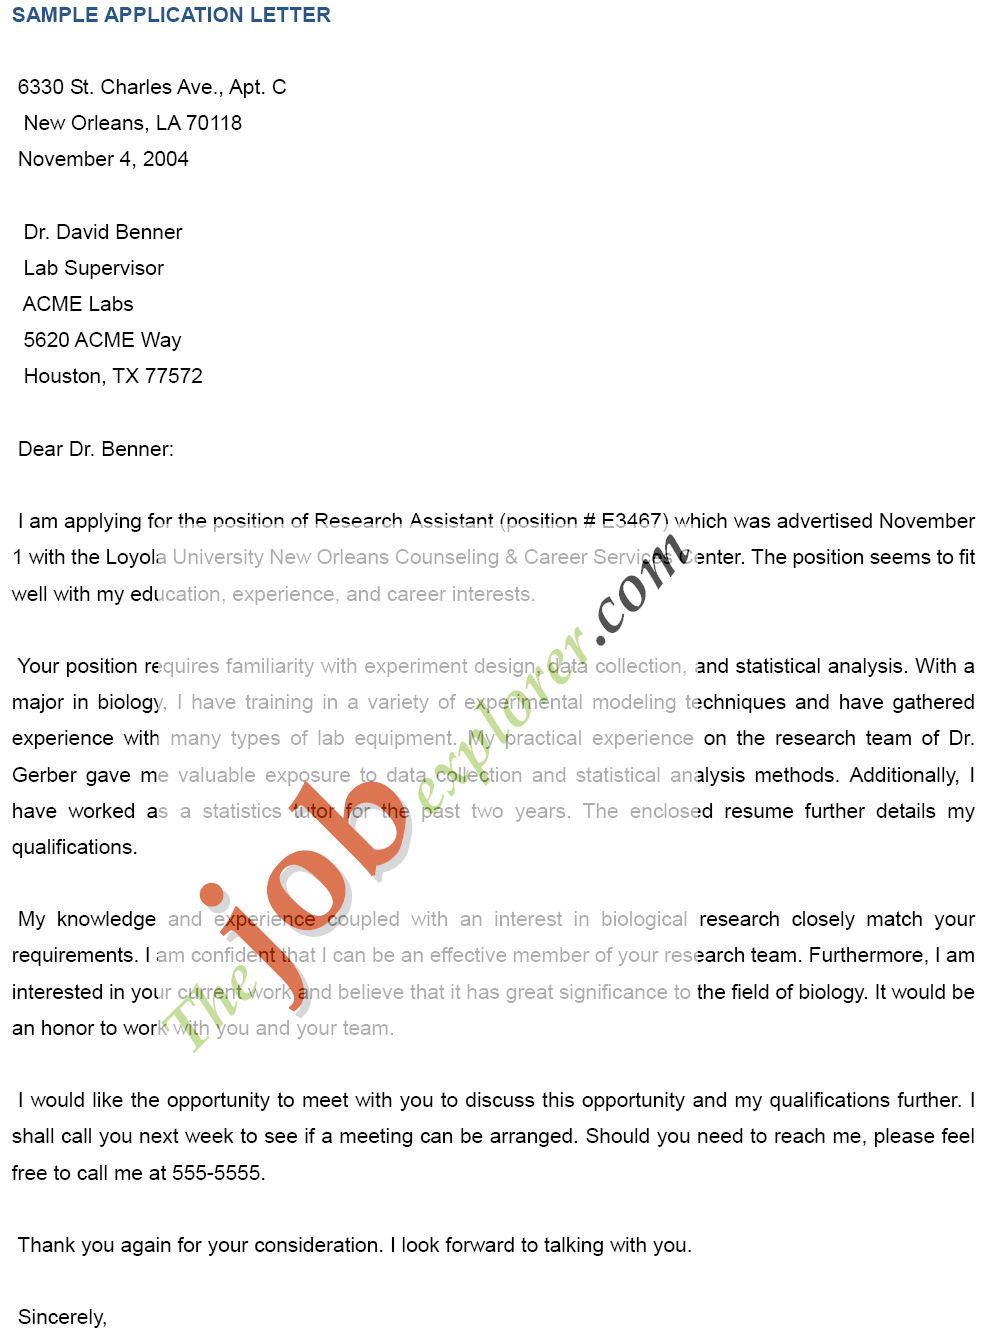 Simple job application letter for teacher